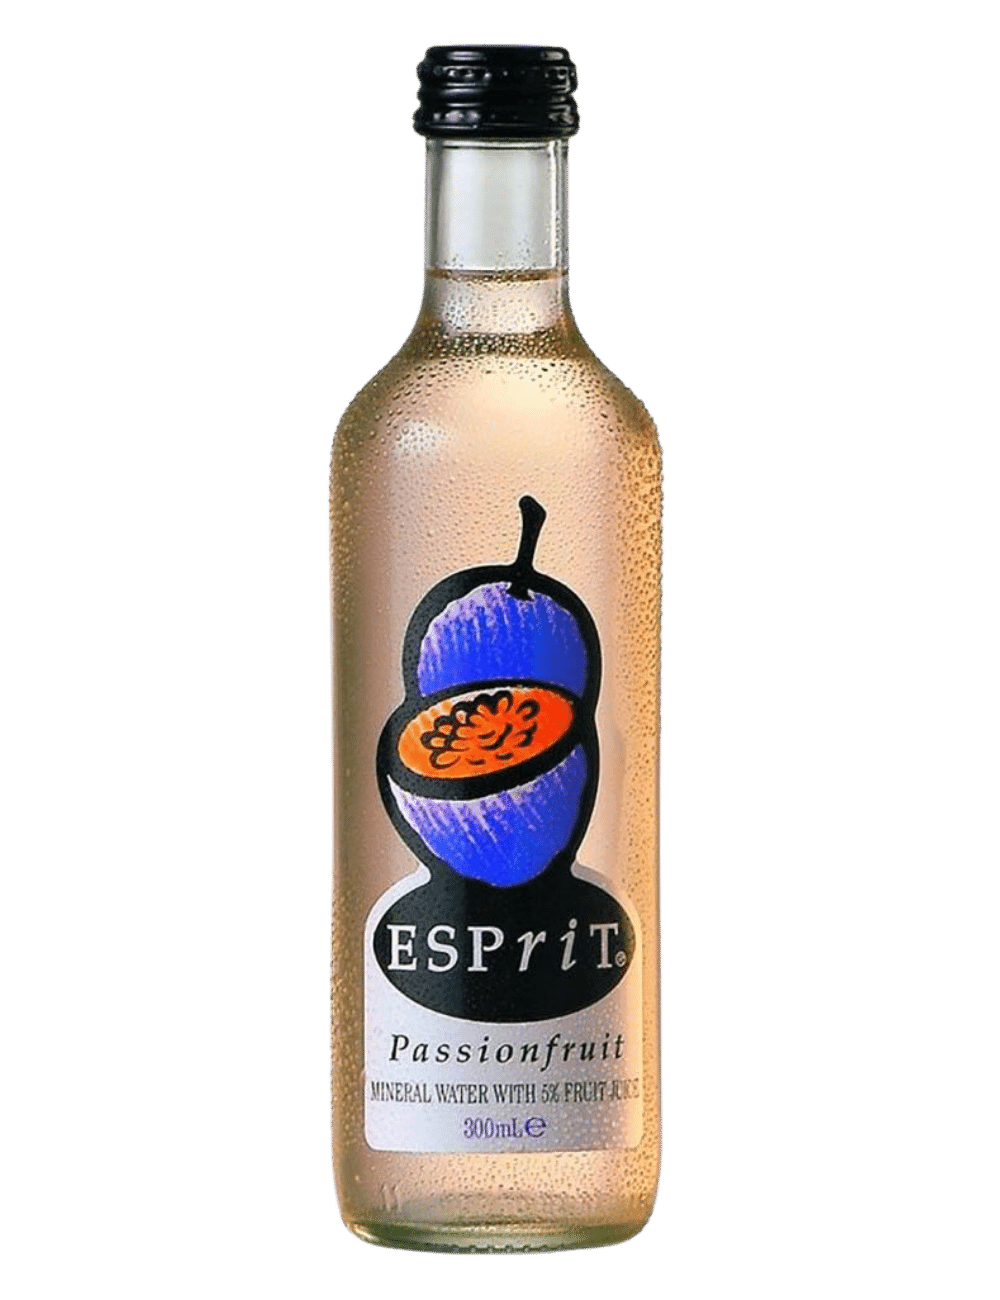 Esprit Passionfruit